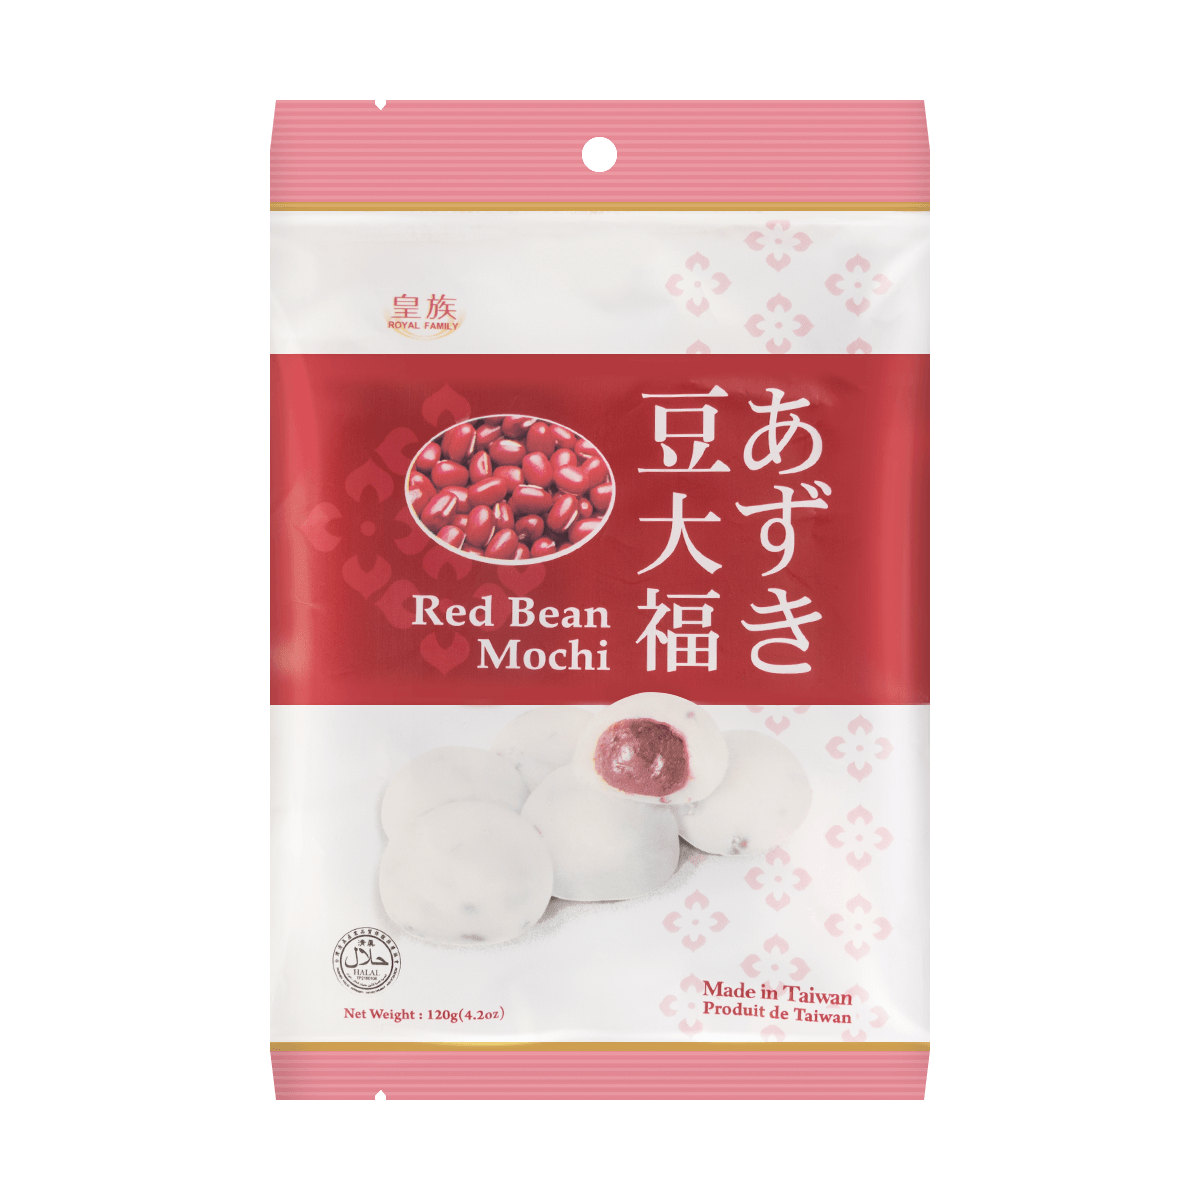 台湾皇族日式大福麻薯红豆味1g 亚米网